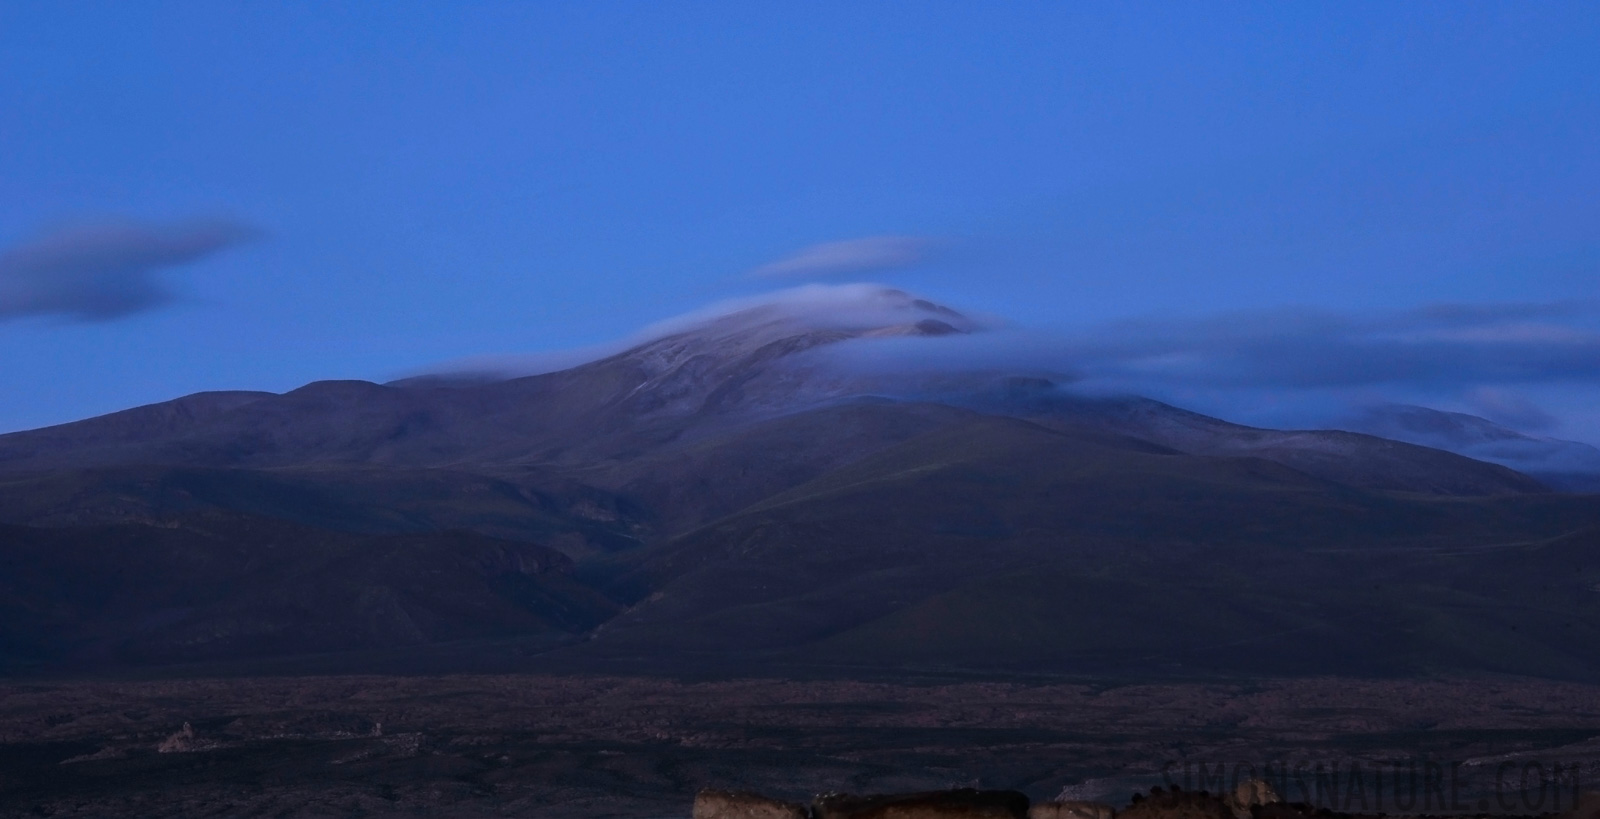 Die bolivianischen Anden am frühen Morgen [135 mm, 20.0 Sek. bei f / 22, ISO 200]